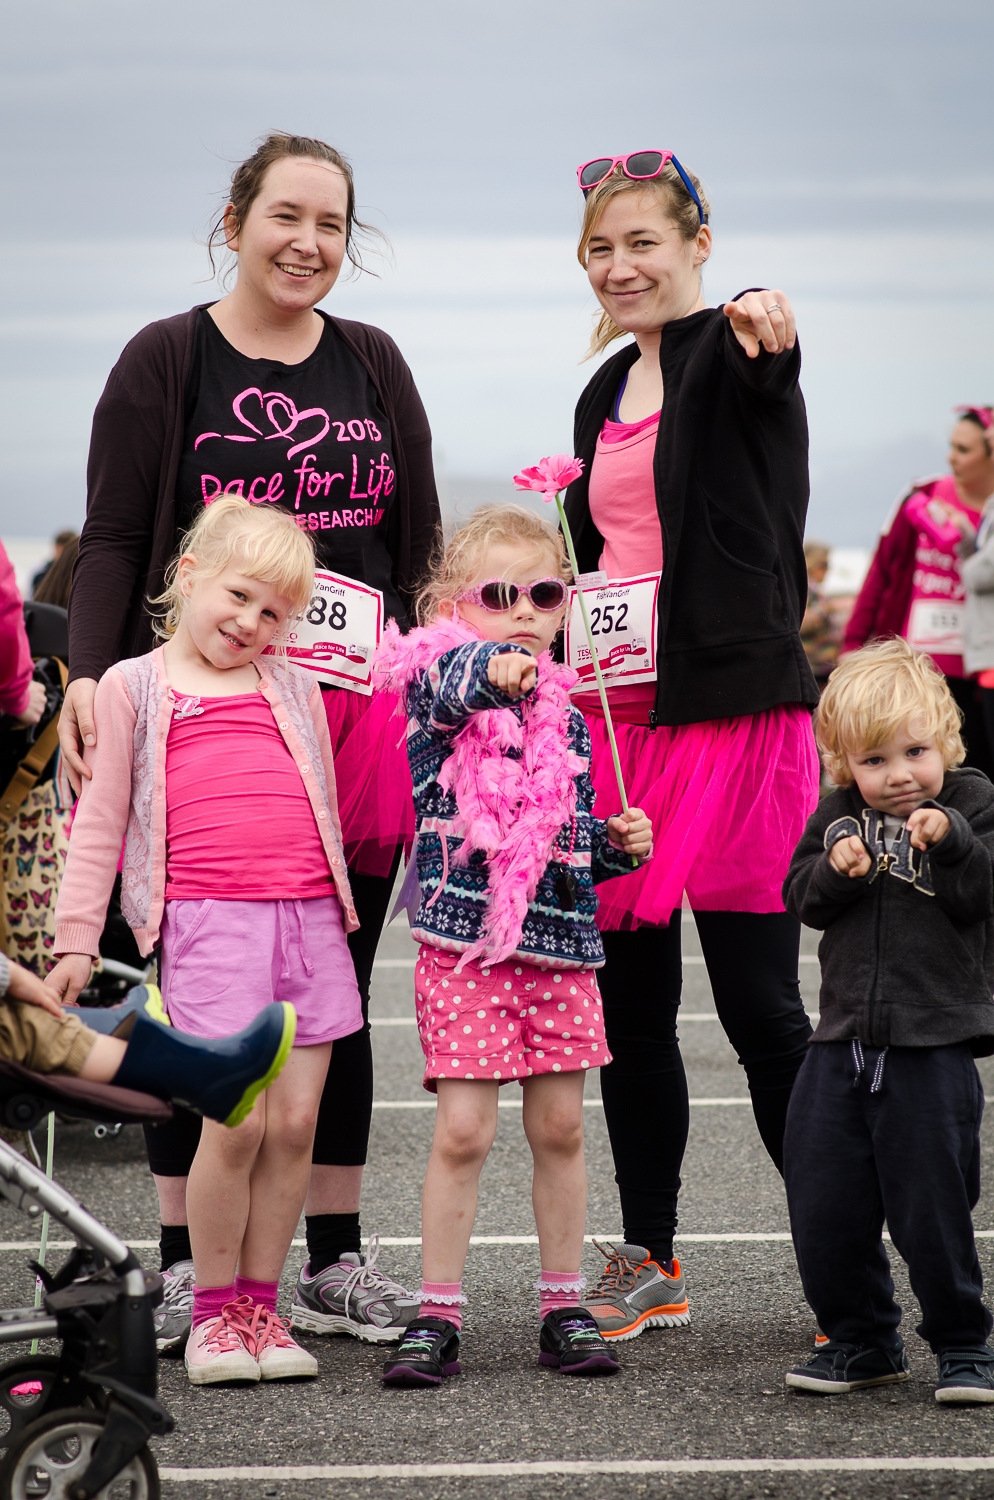 Race for life blog 2015-4.jpg